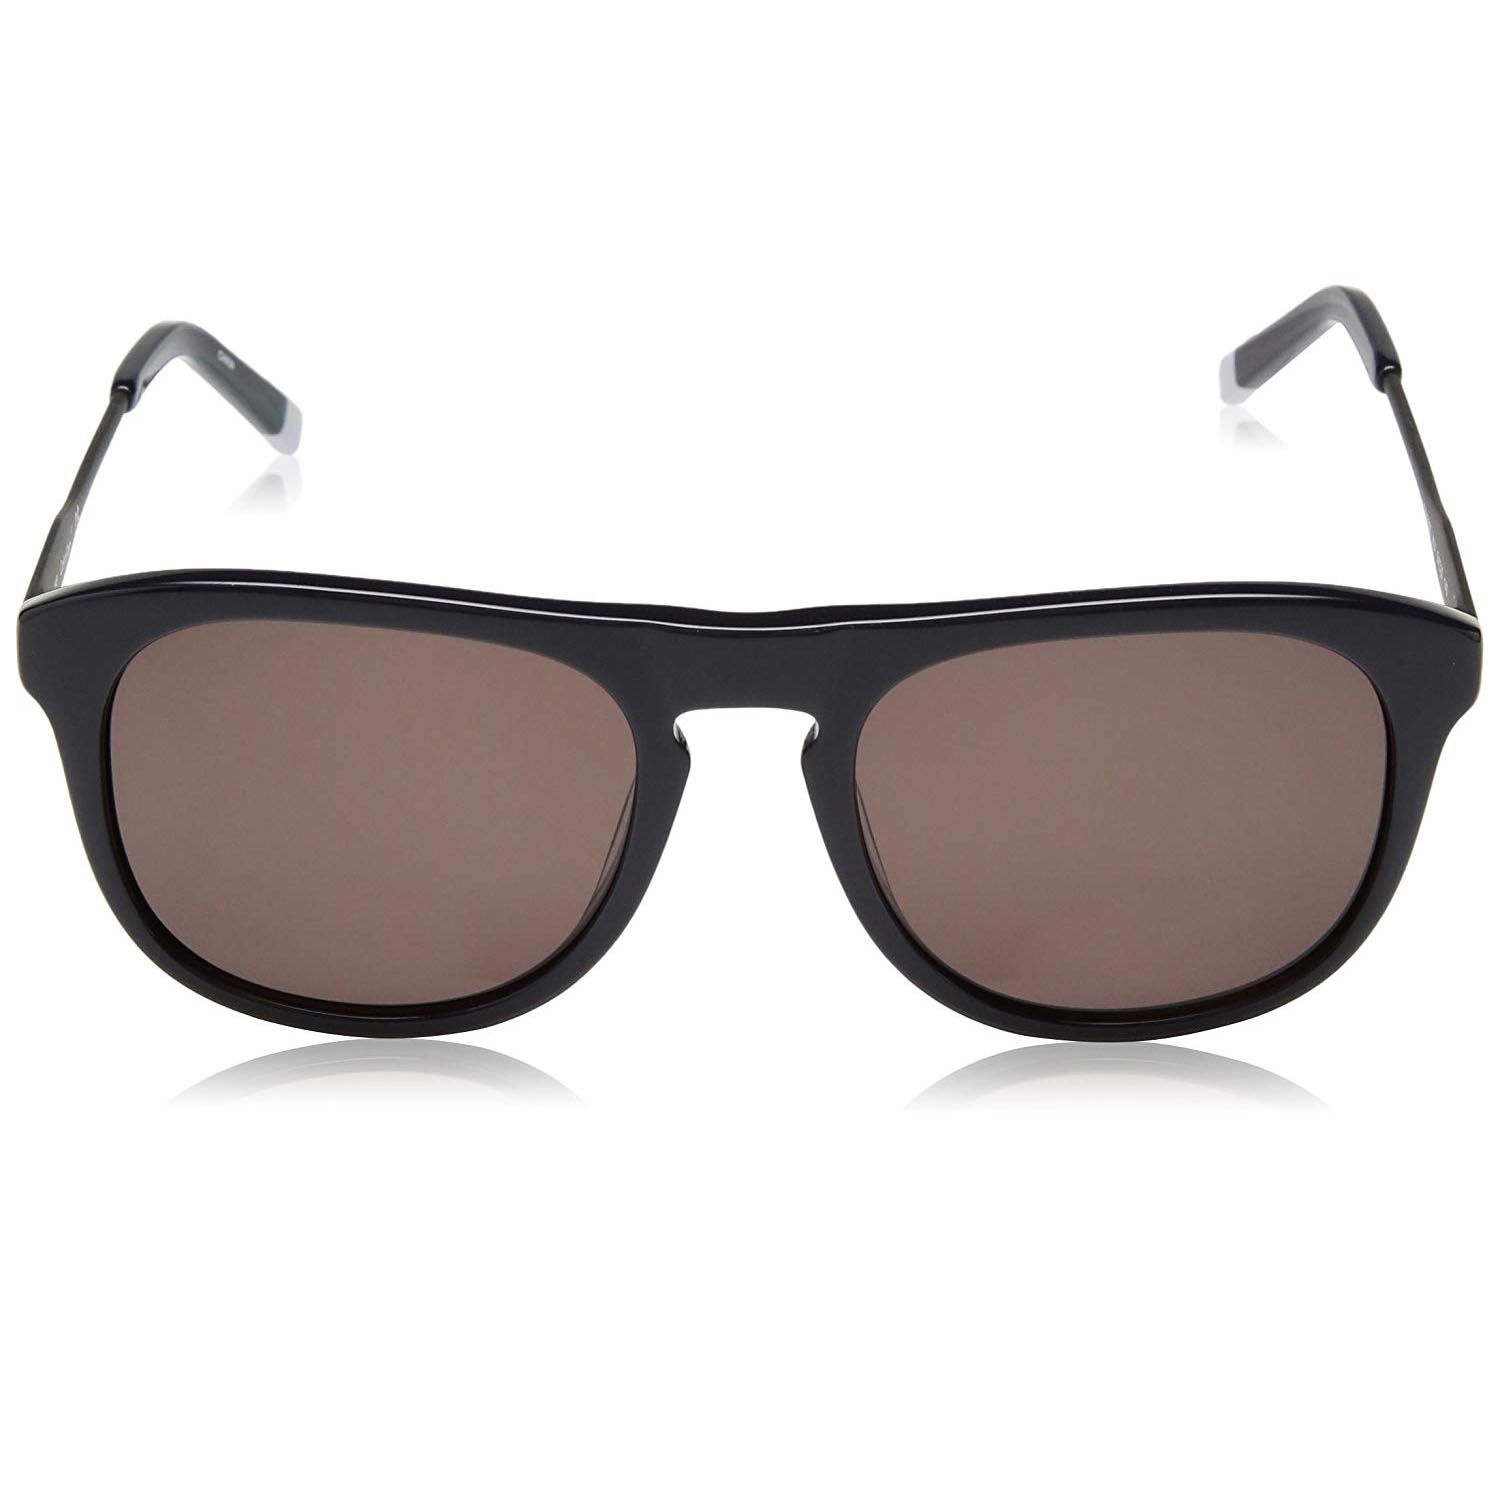 Calvin Klein Oval Men's Sunglasses Navy CK4320S 54mm xách tay chính hãng  giá rẻ bảo hành dài - Kính nam - Senmix